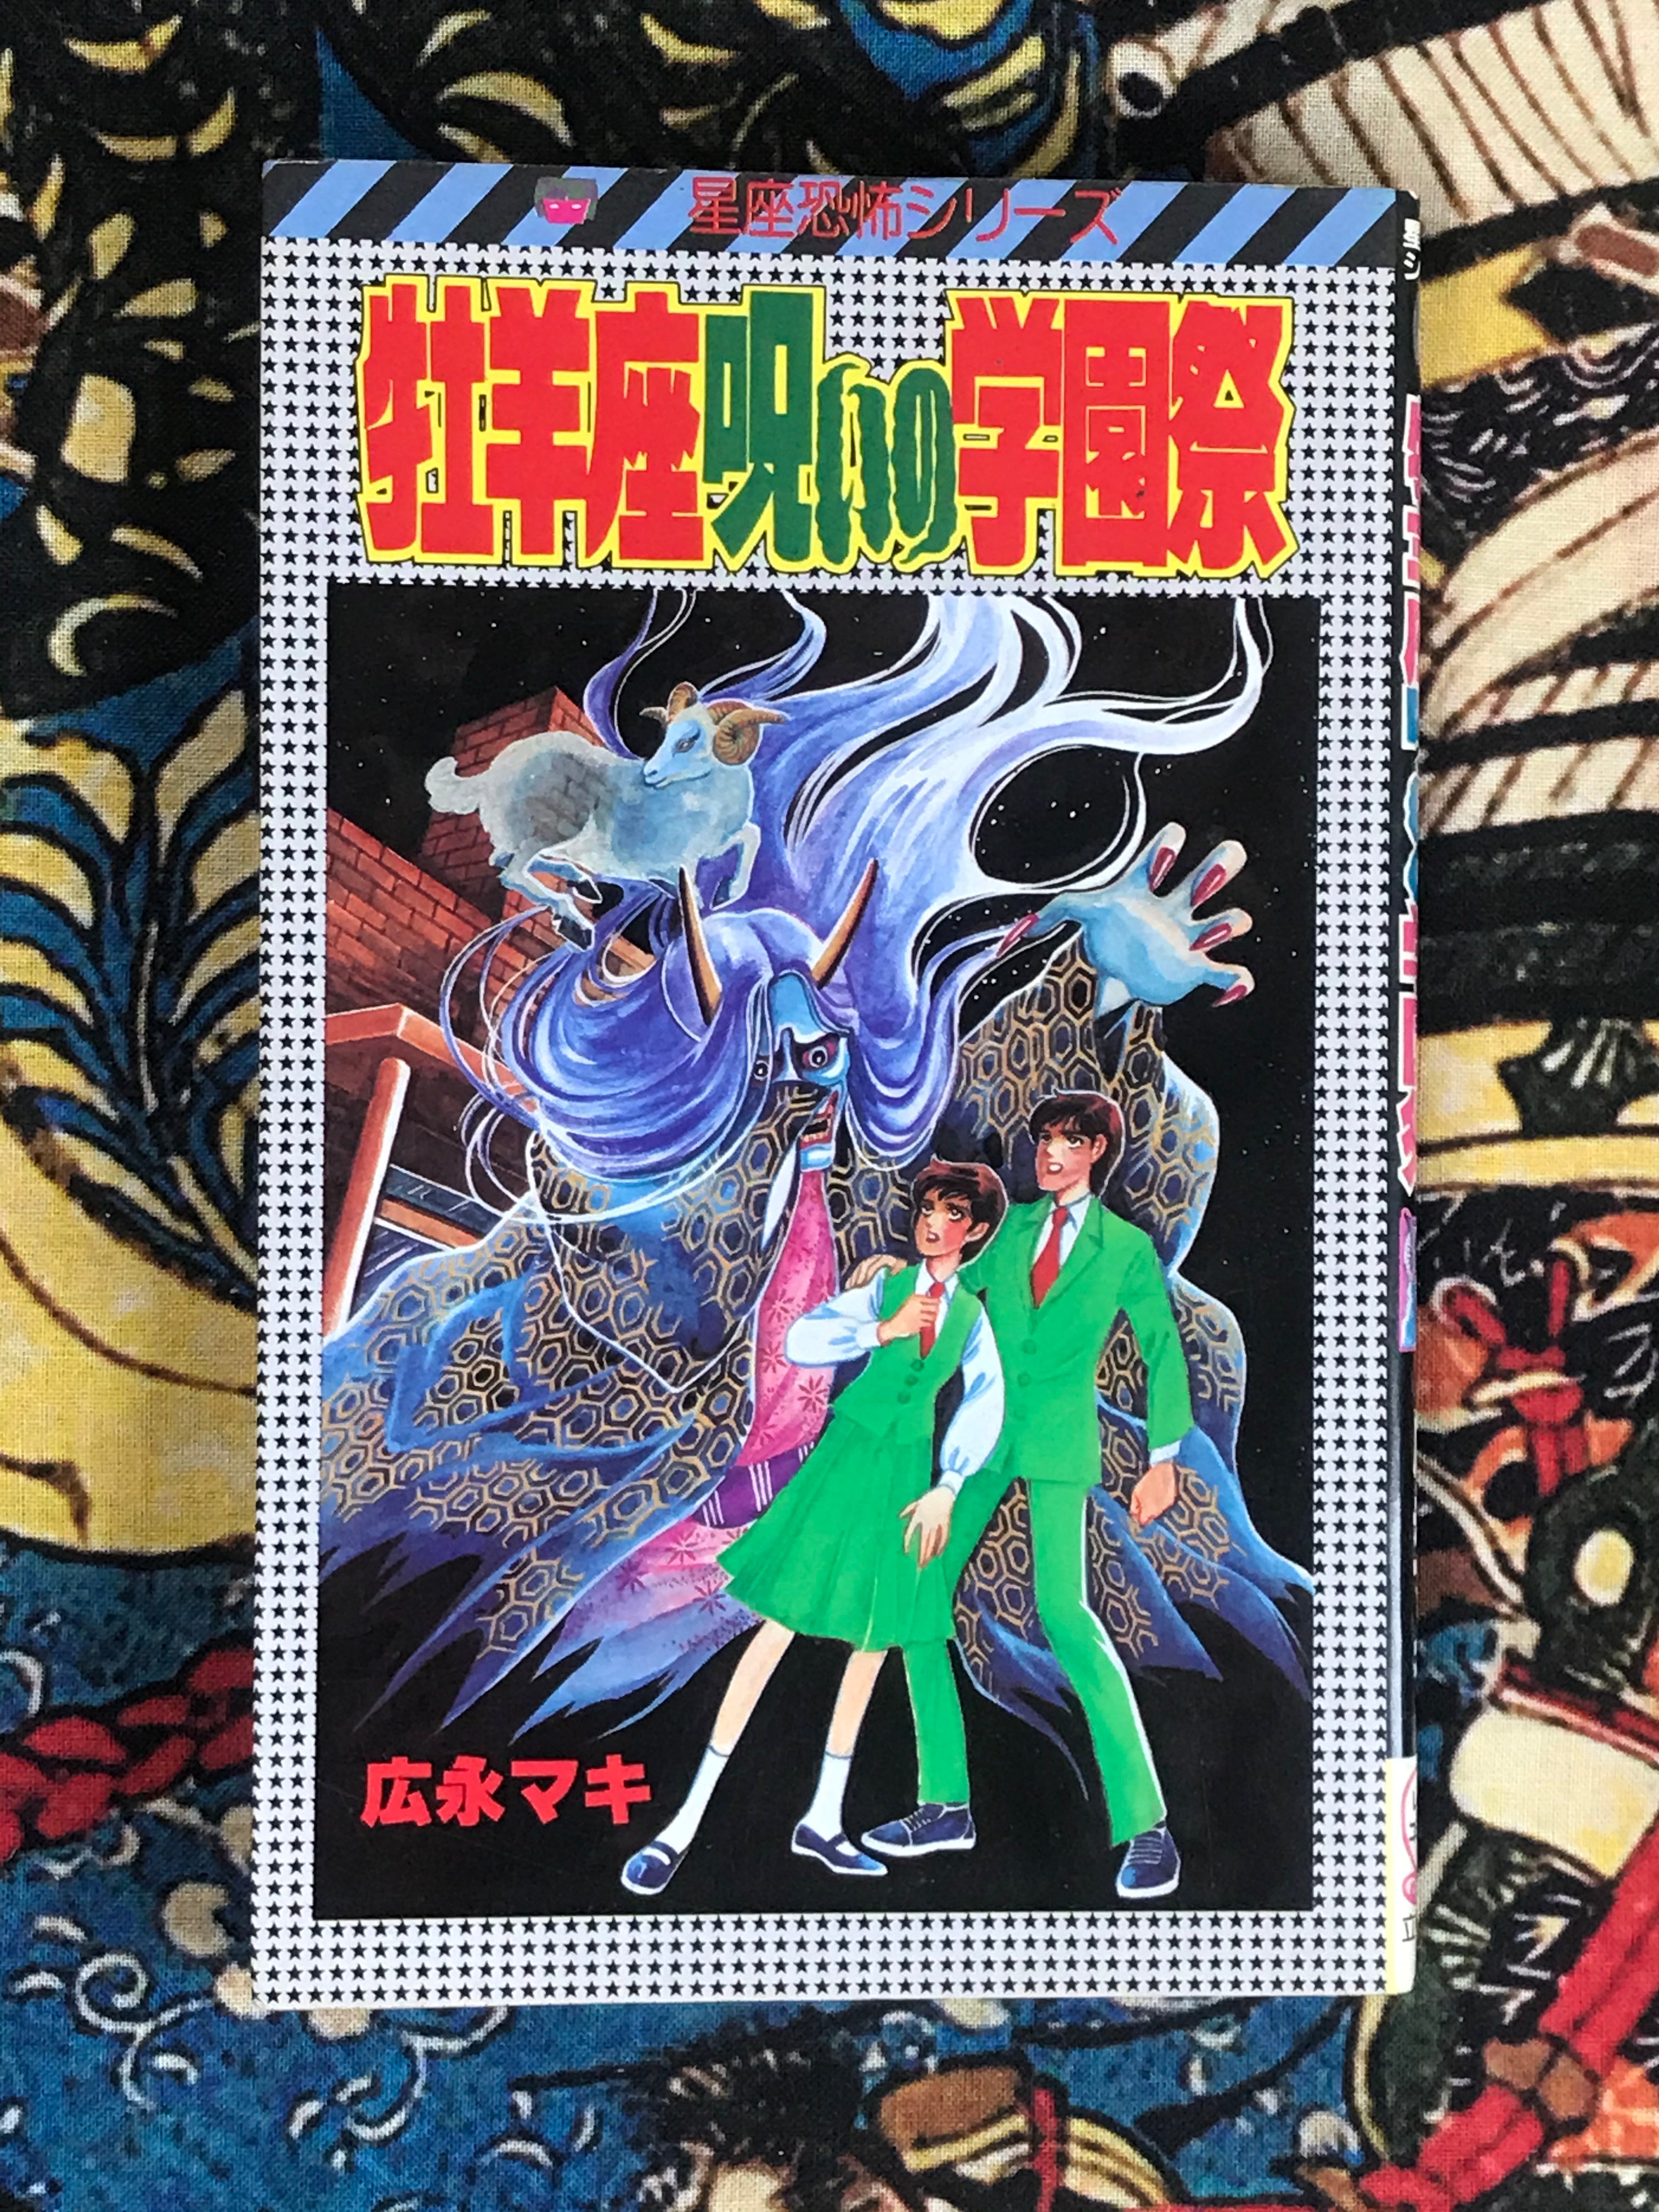 Aries Cursed School Festival by Maki Hironaga (1986)